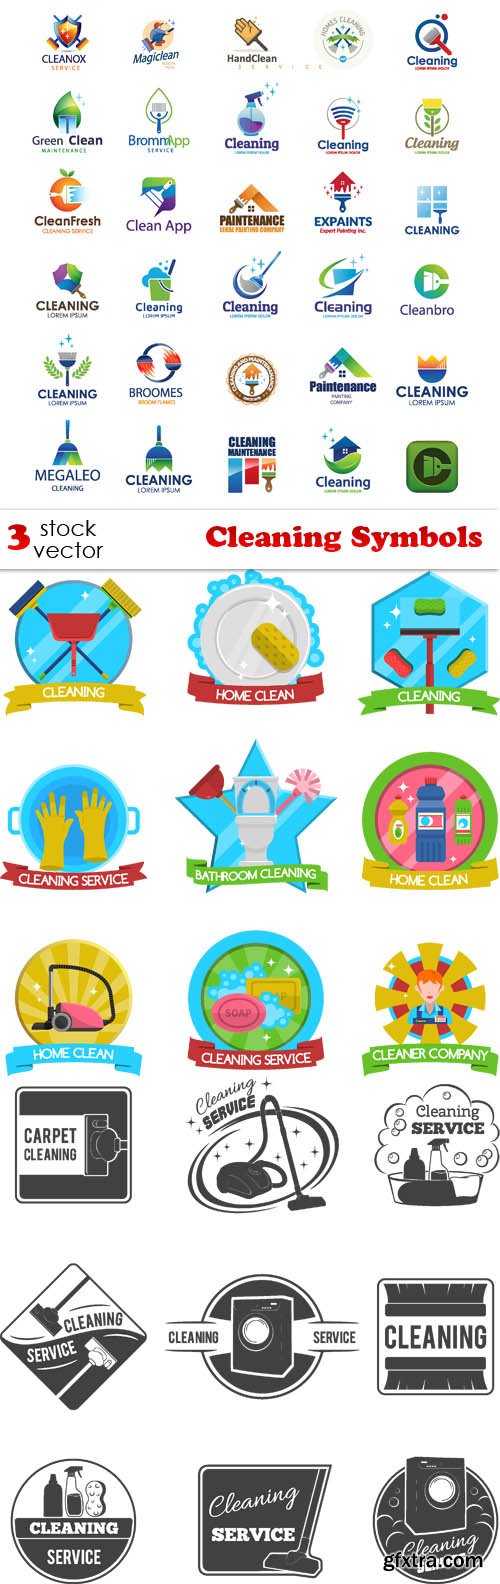 Vectors - Cleaning Symbols